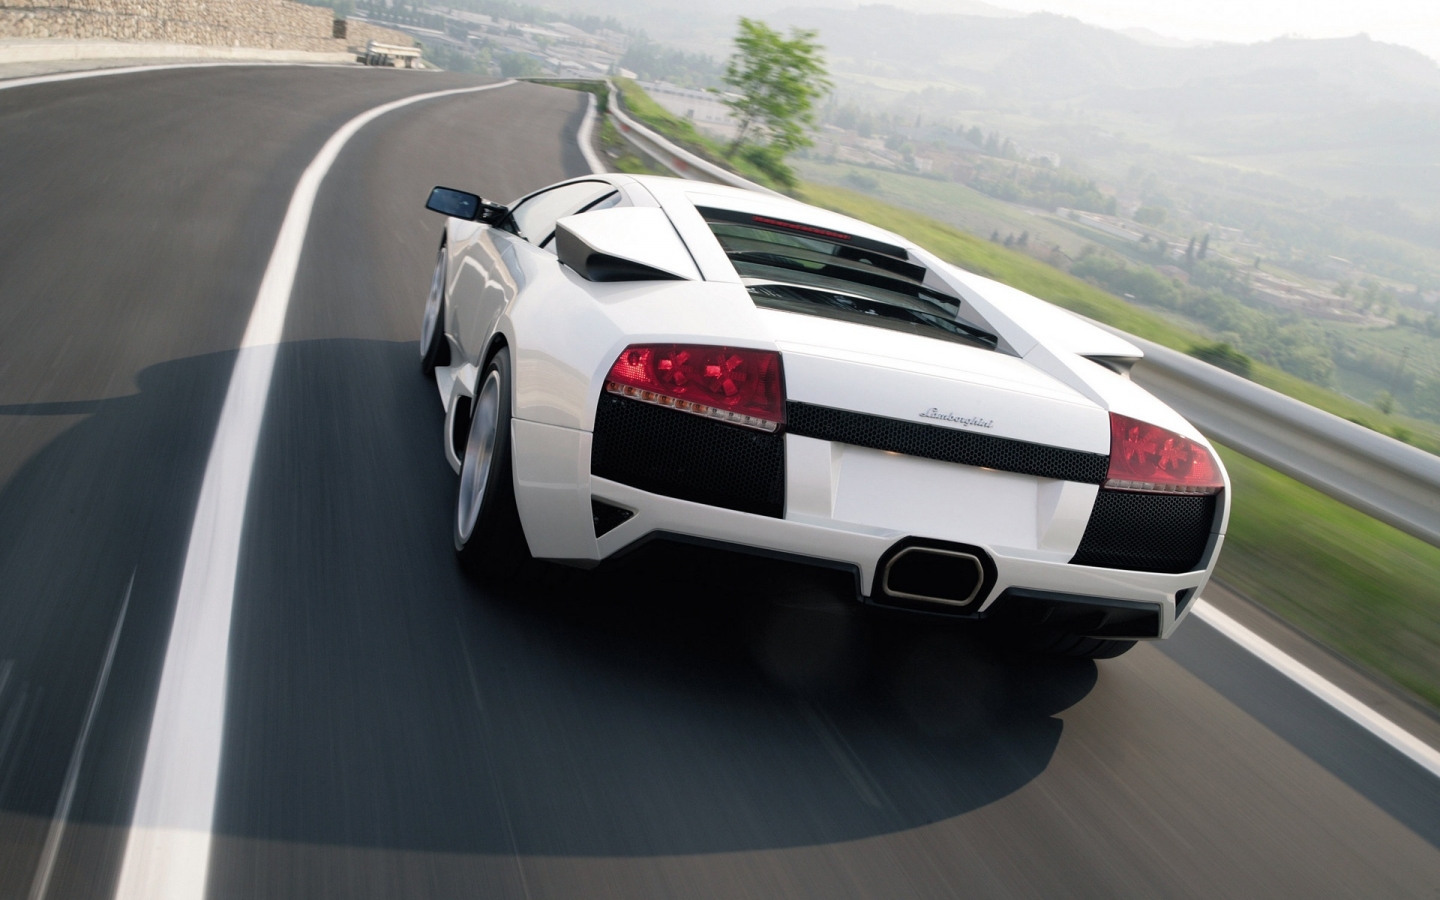 Lamborghini Murcielago LP640 2010 White for 1440 x 900 widescreen resolution